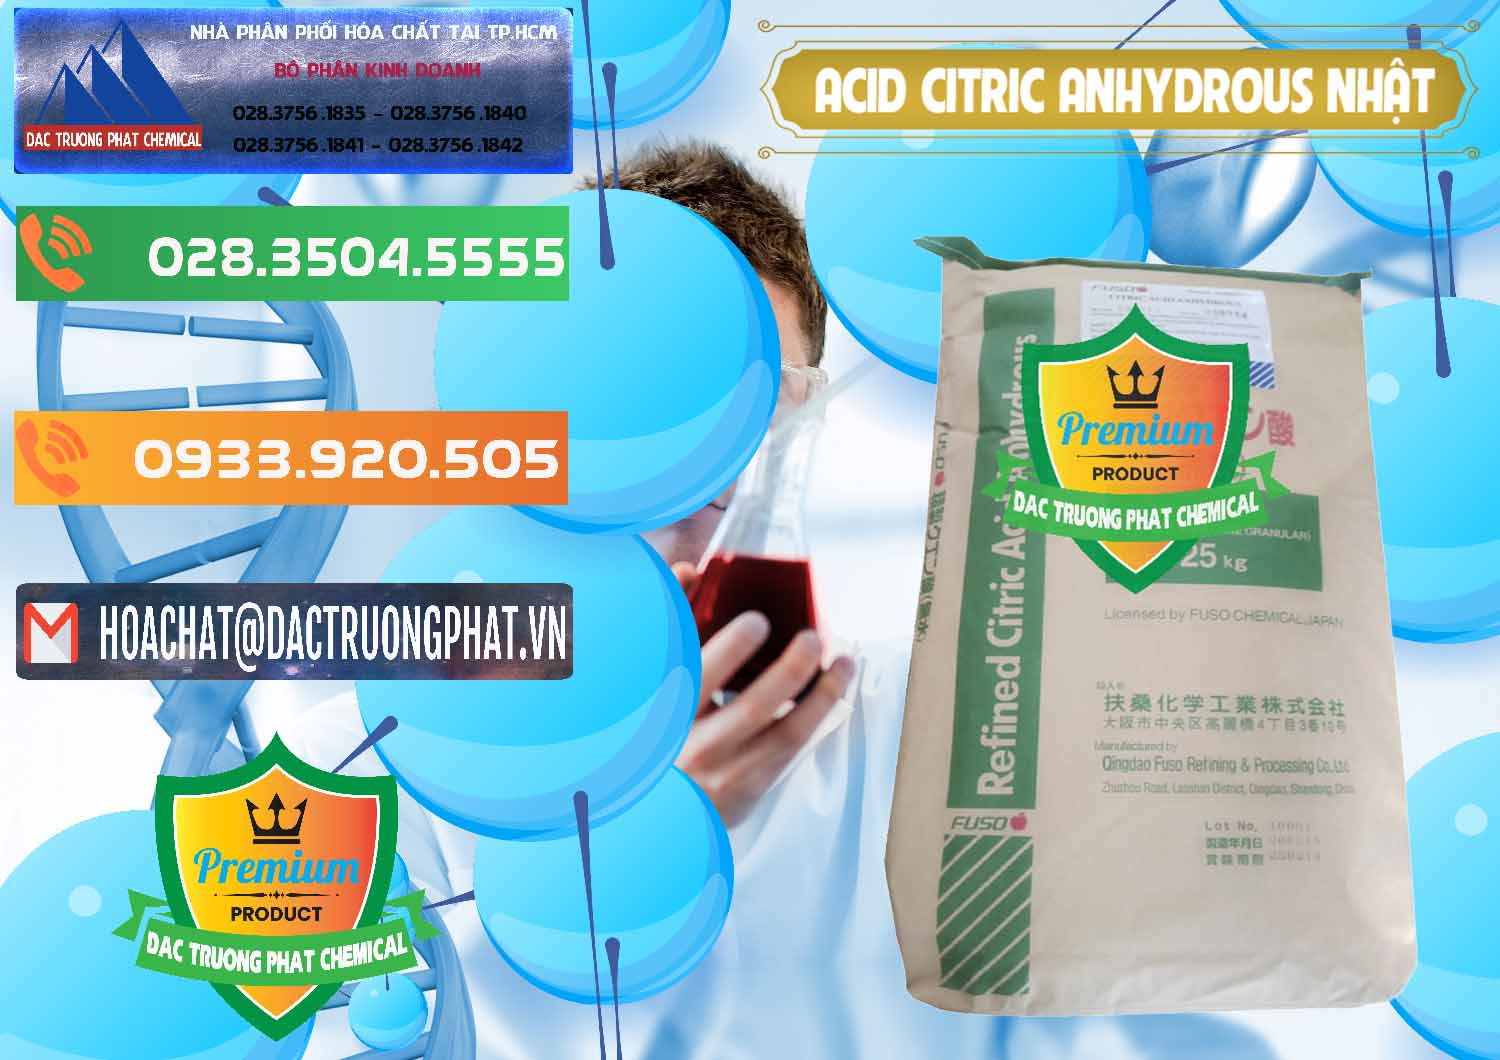 Cty chuyên bán và phân phối Acid Citric - Axit Citric Anhydrous FUSO Nhật Japan - 0439 - Công ty chuyên phân phối _ bán hóa chất tại TP.HCM - hoachatxulynuoc.com.vn